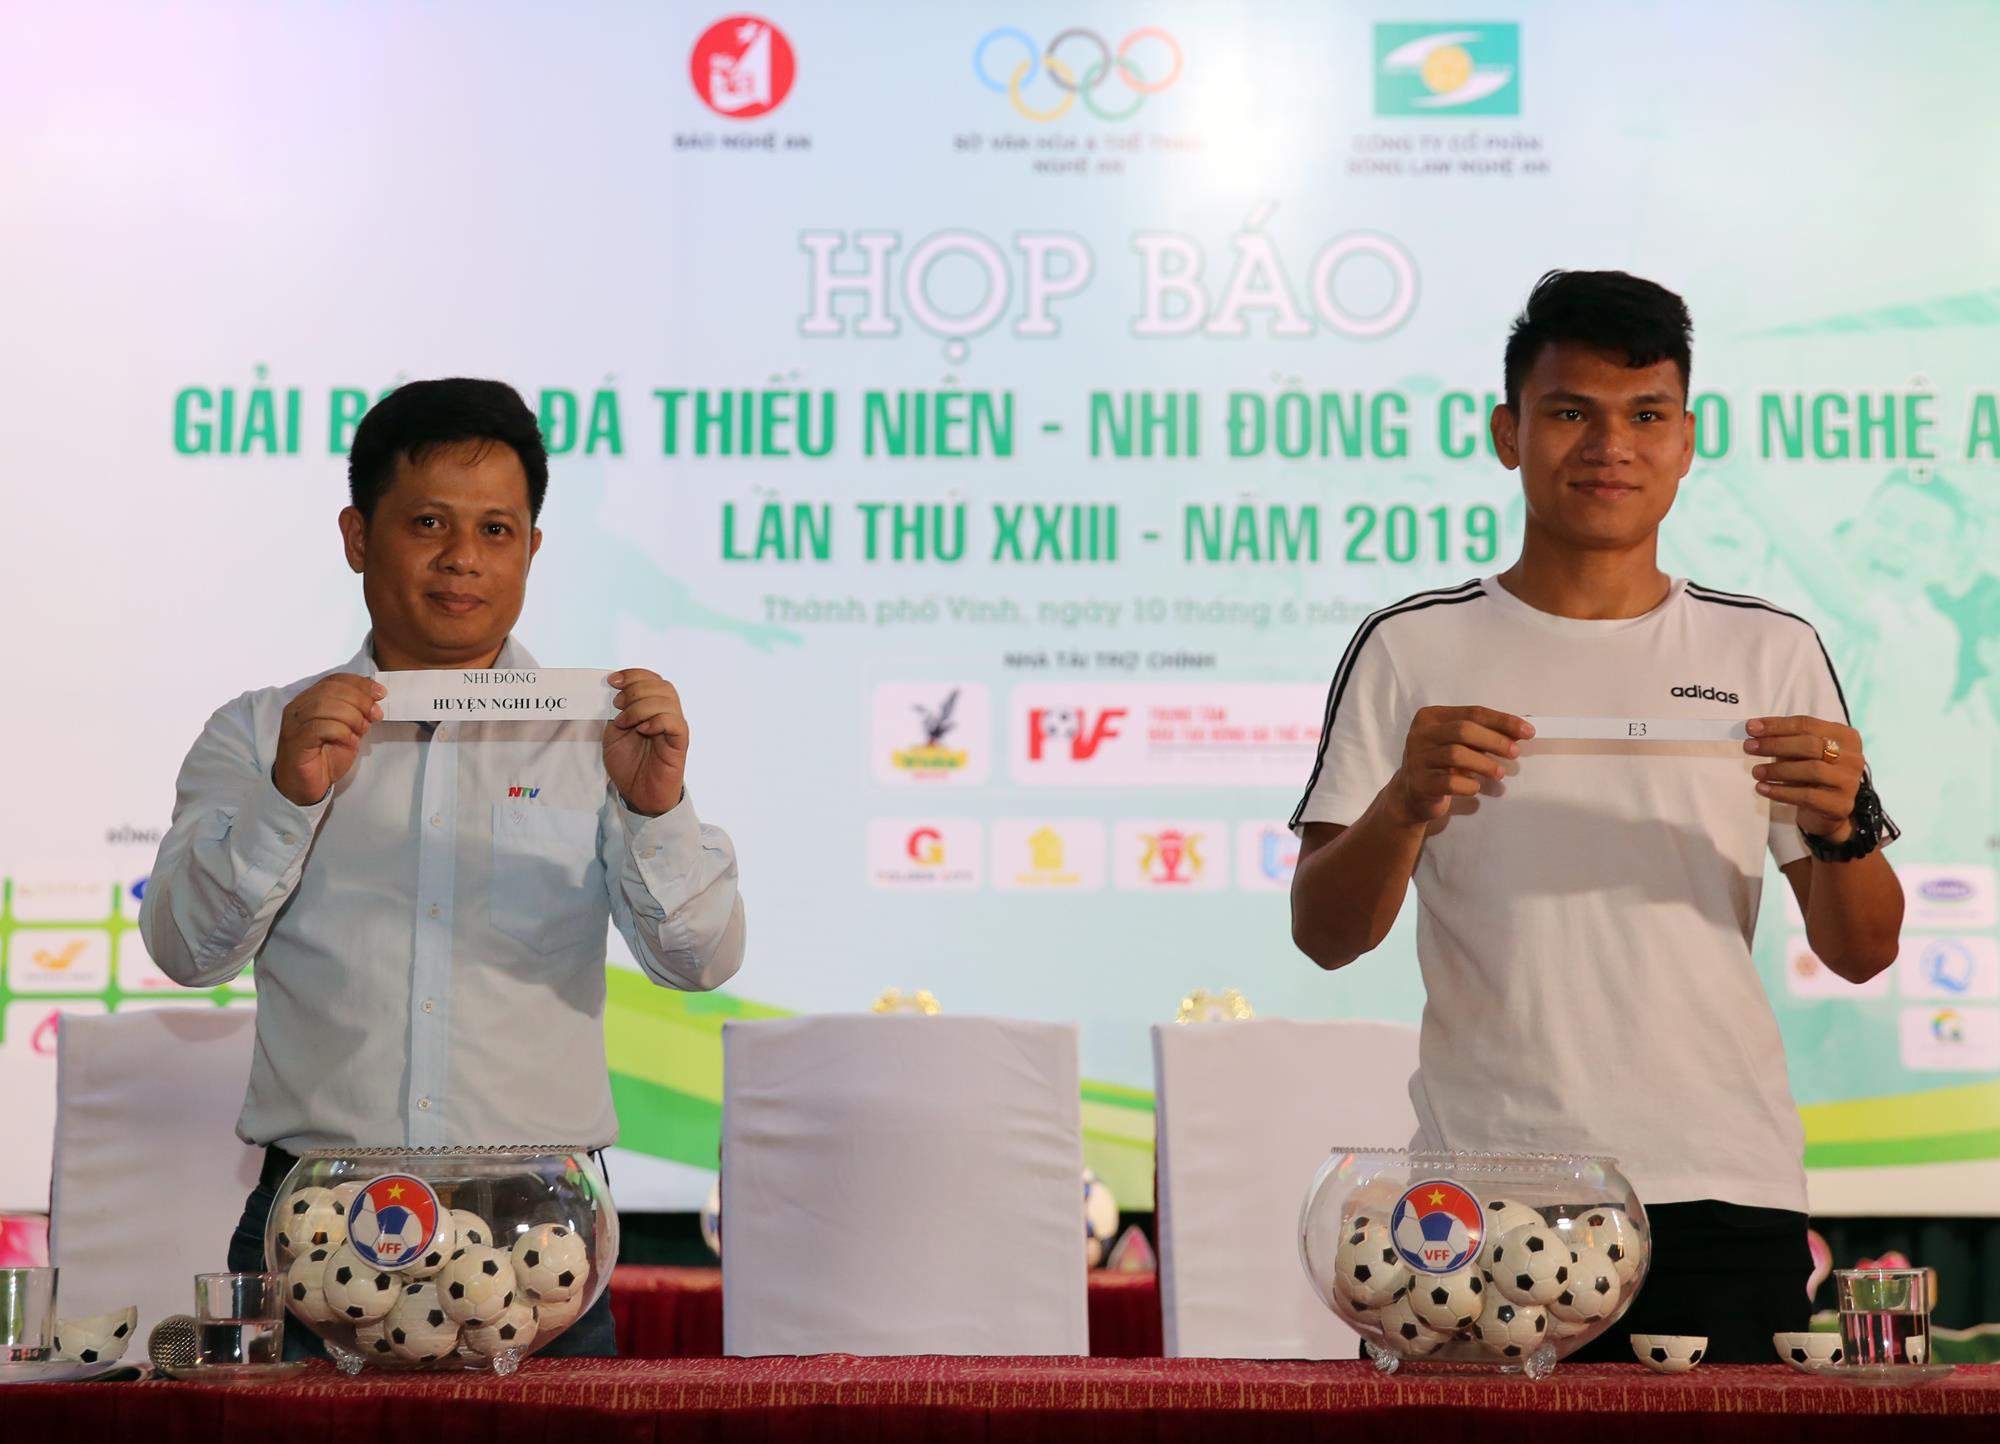 Cầu thủ Phạm Xuân Mạnh và nhà báo Nguyễn Hưng bốc thăm, chia bảng đấu lứa tuổi nhi đồng. Ảnh: Đức Anh